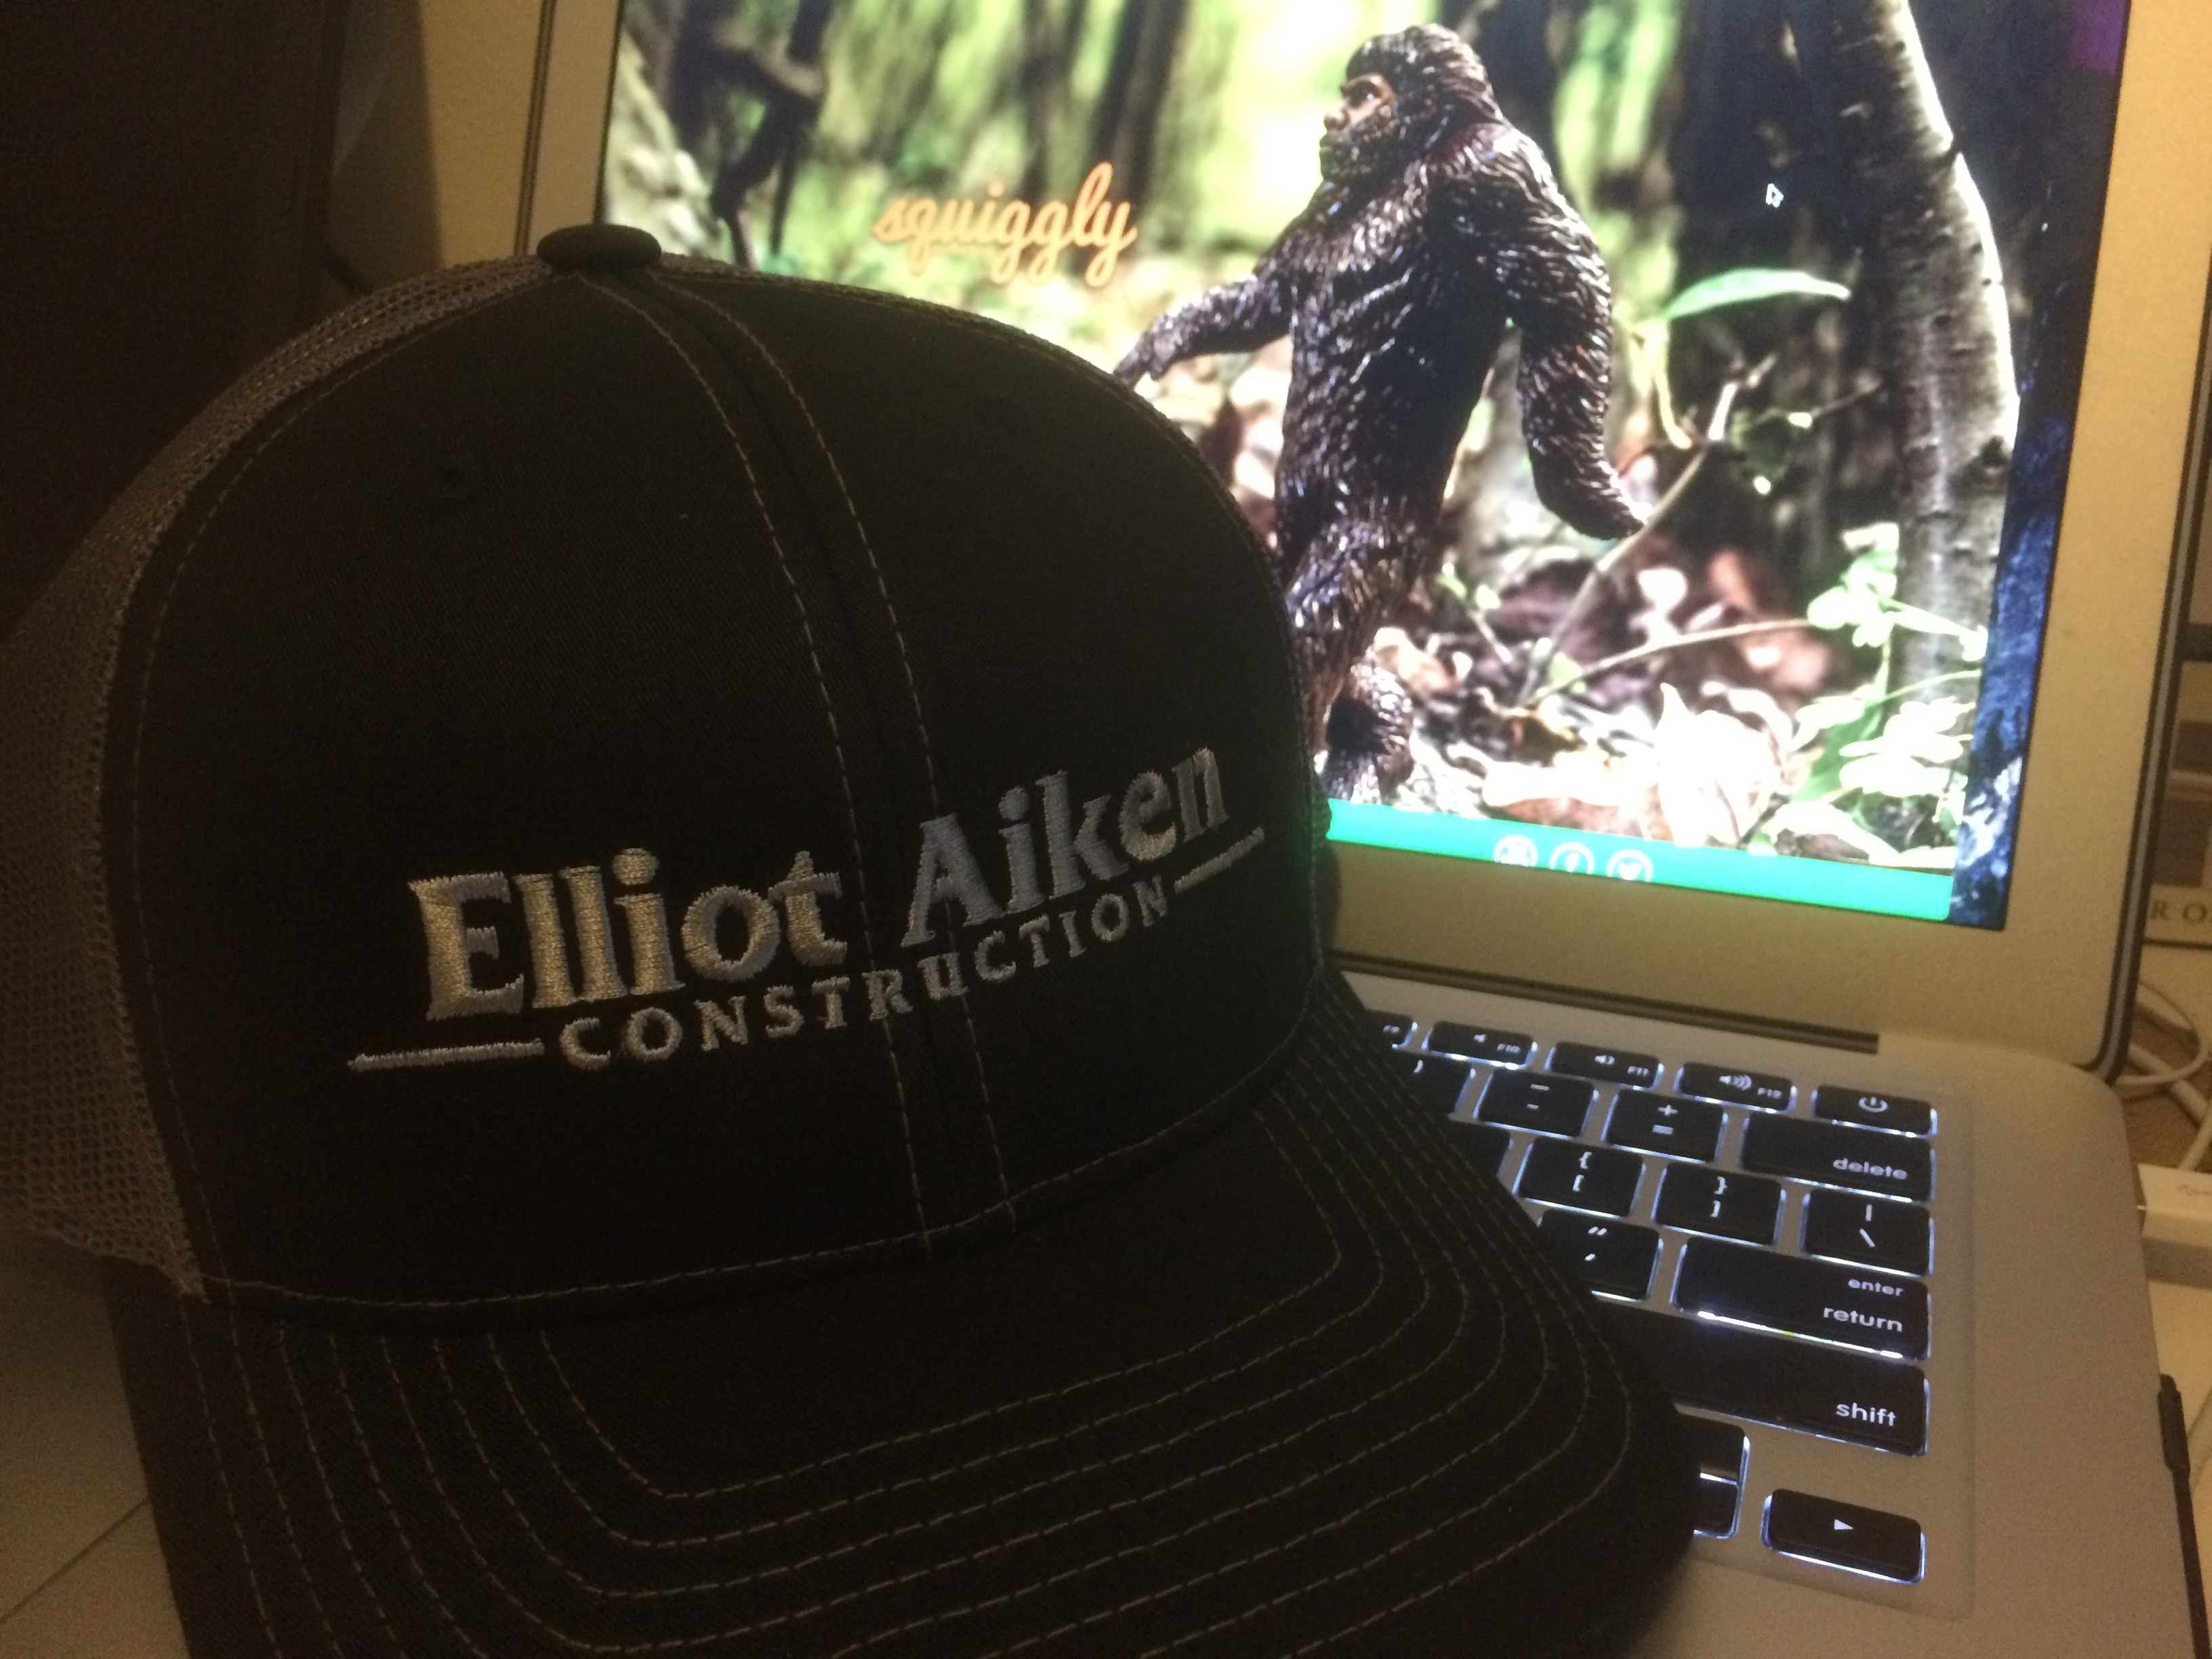 Trucker Style Hat For Elliot Aiken Construction